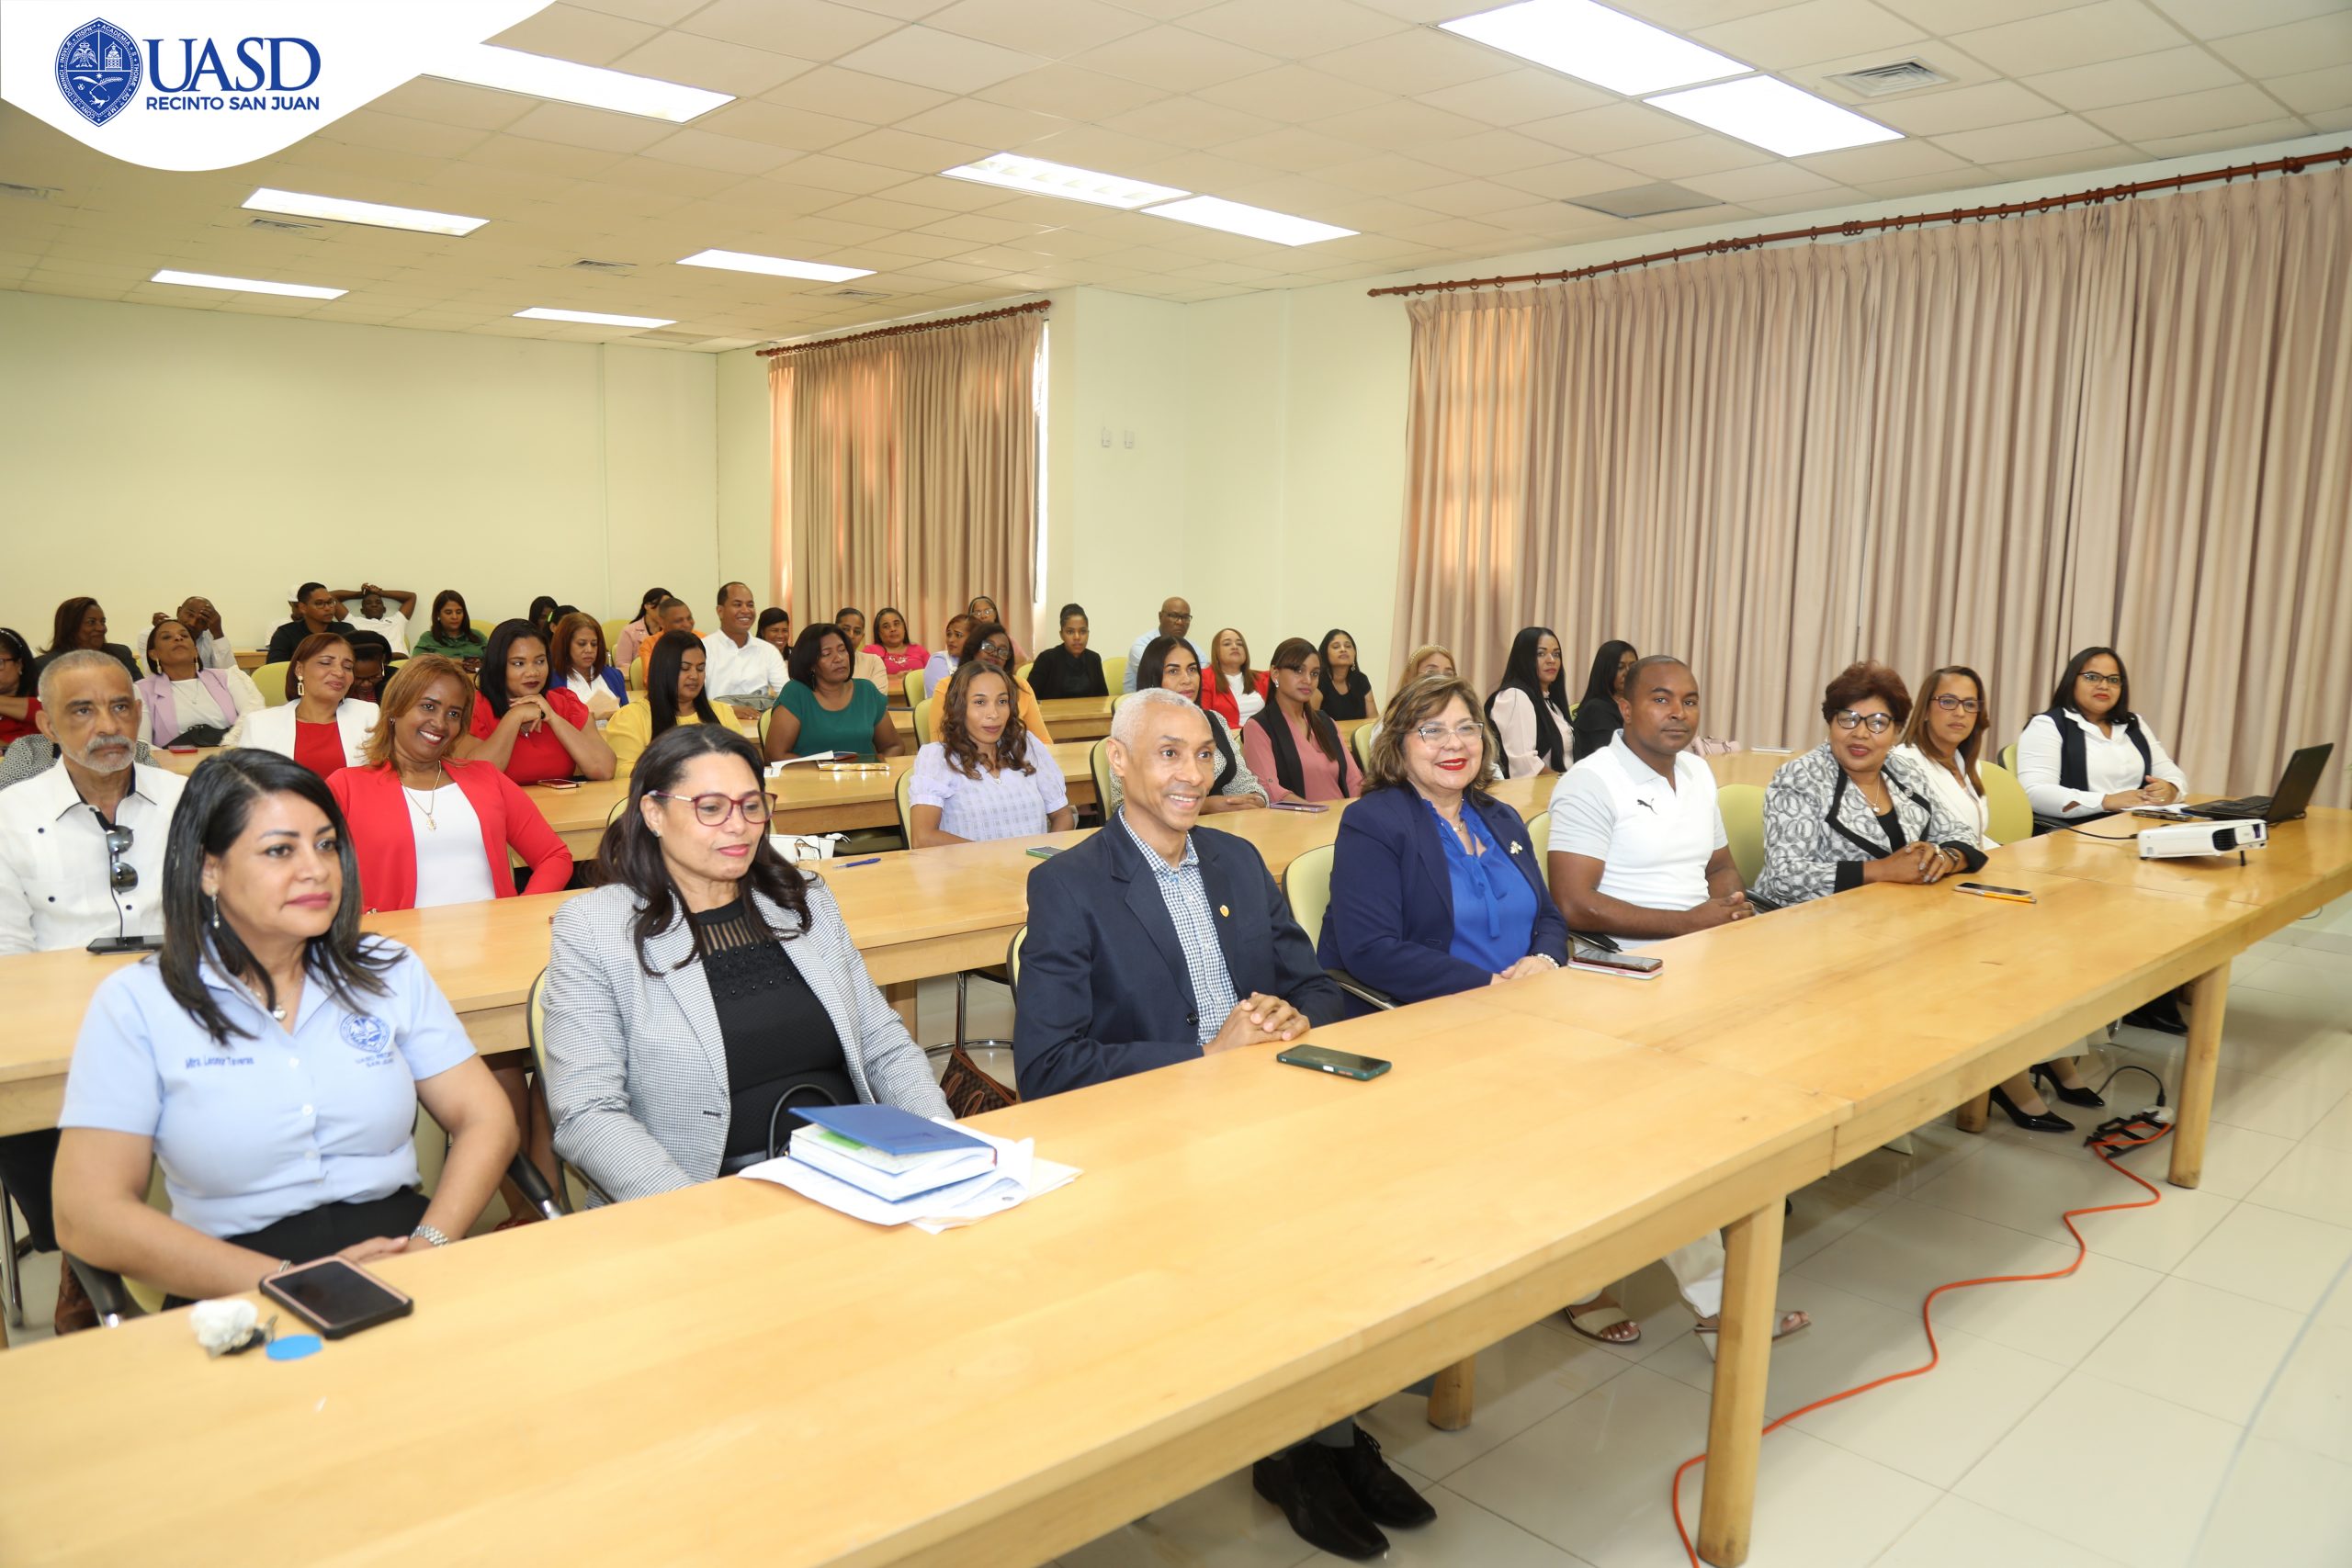 UASD Recinto San Juan culmina con éxito programa de maestría